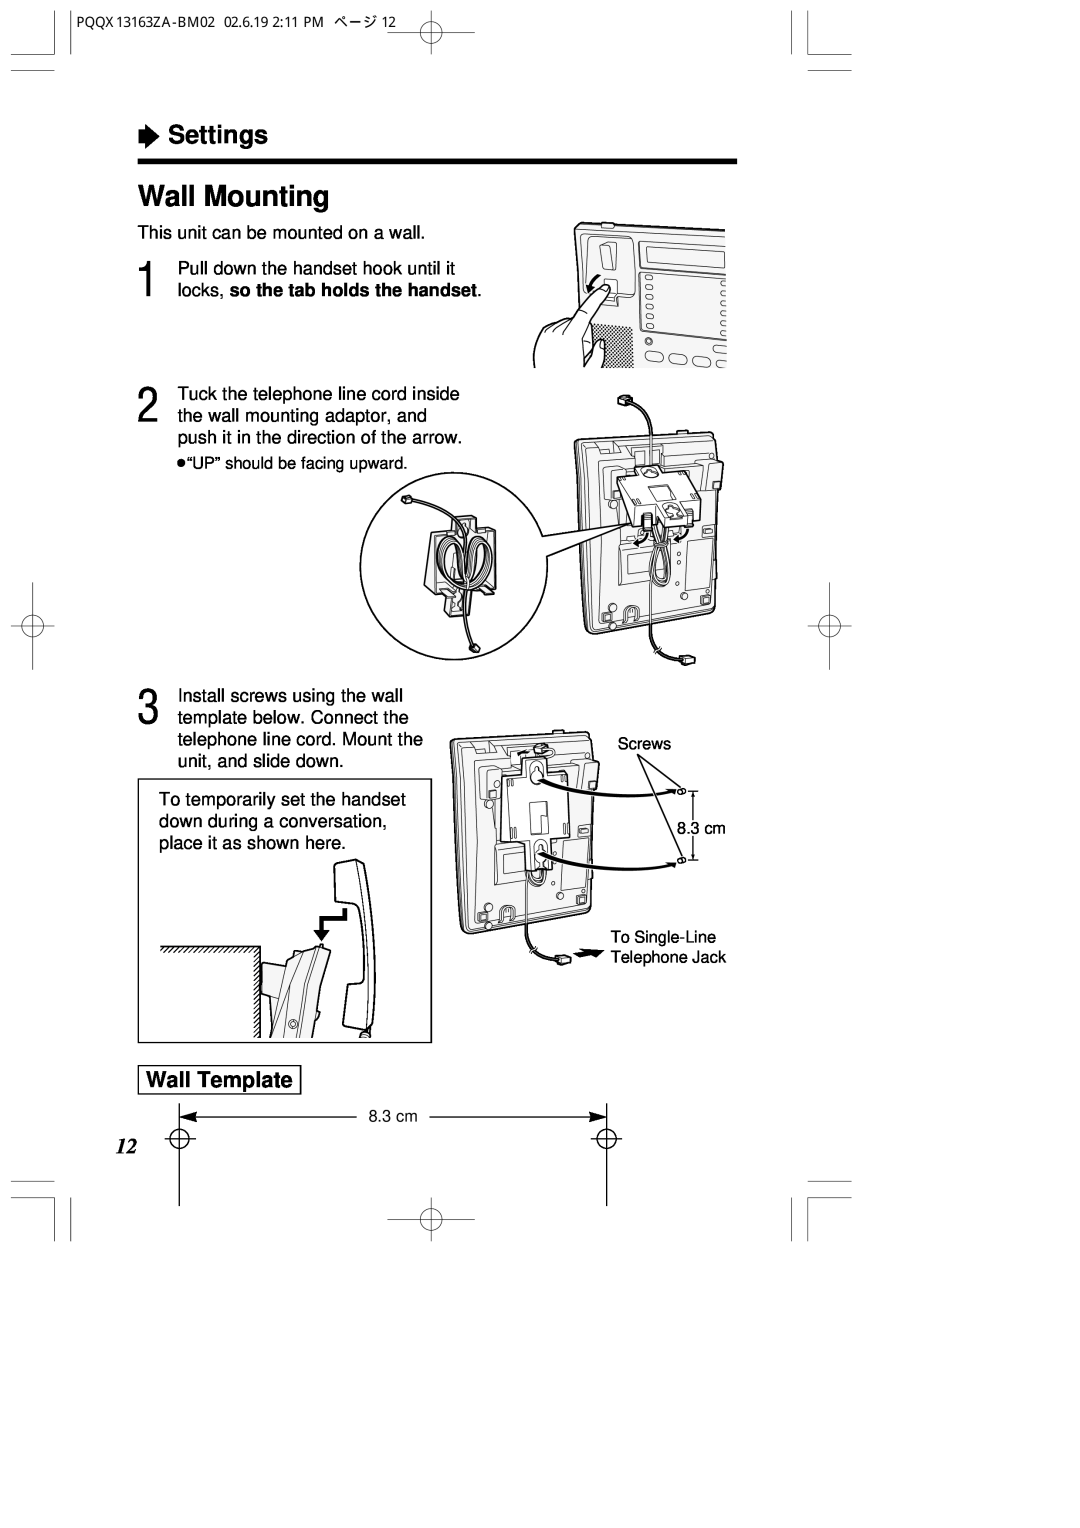 Panasonic KX-T2375SUW operating instructions Wall Mounting, Wall Template, “ Settings 